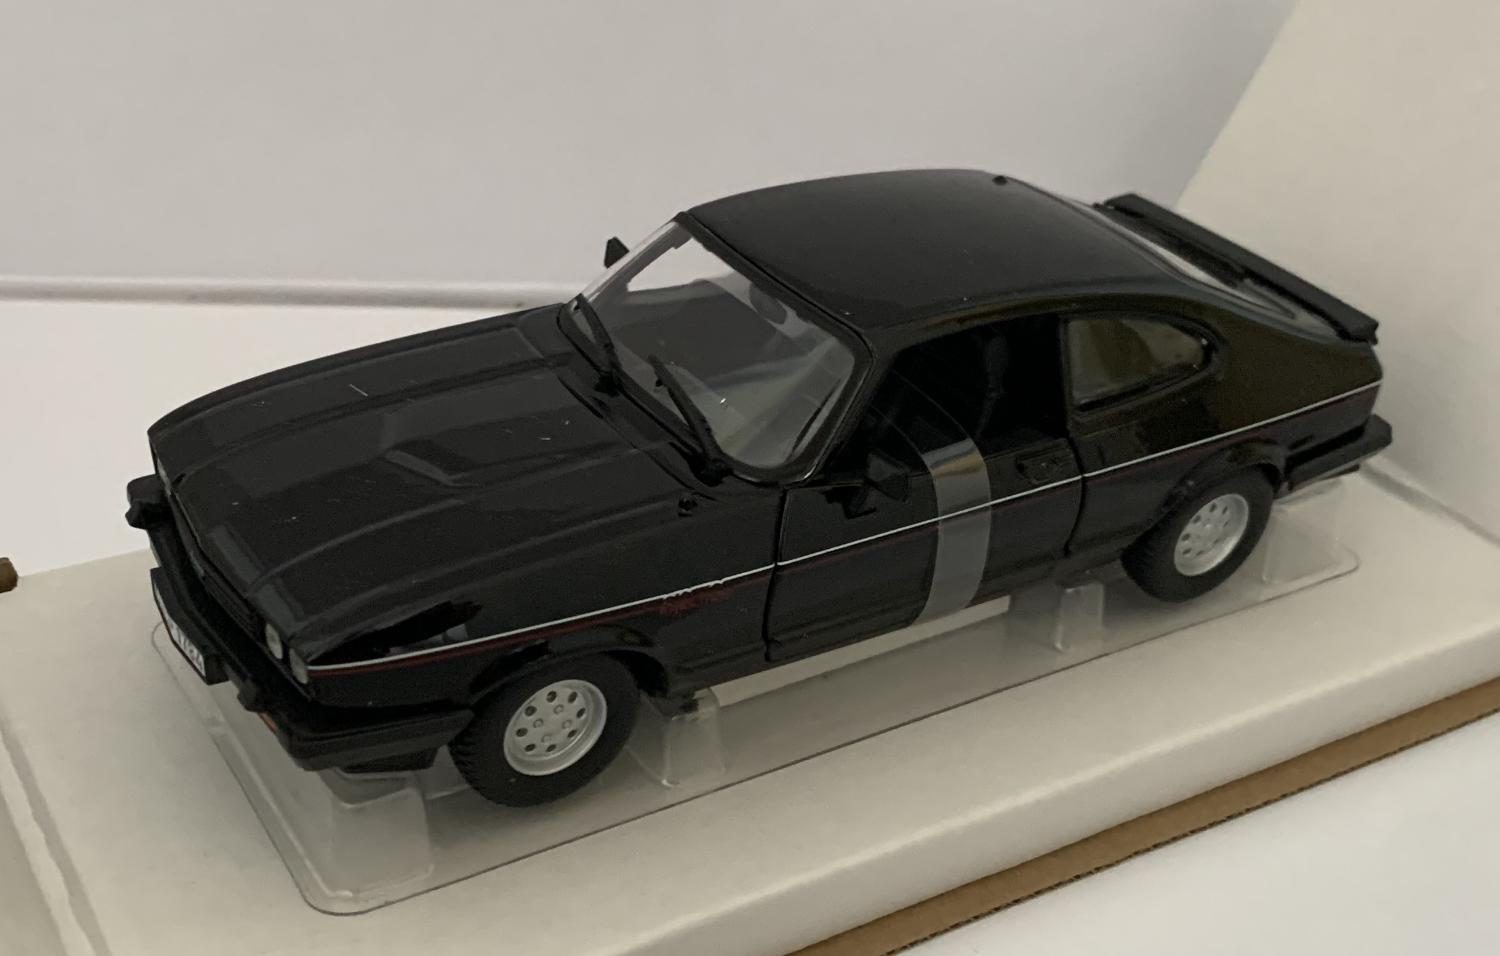 Ford Capri 2.8 Injection 1982 in black 1:24 scale model from Bburago, BB18-21093K